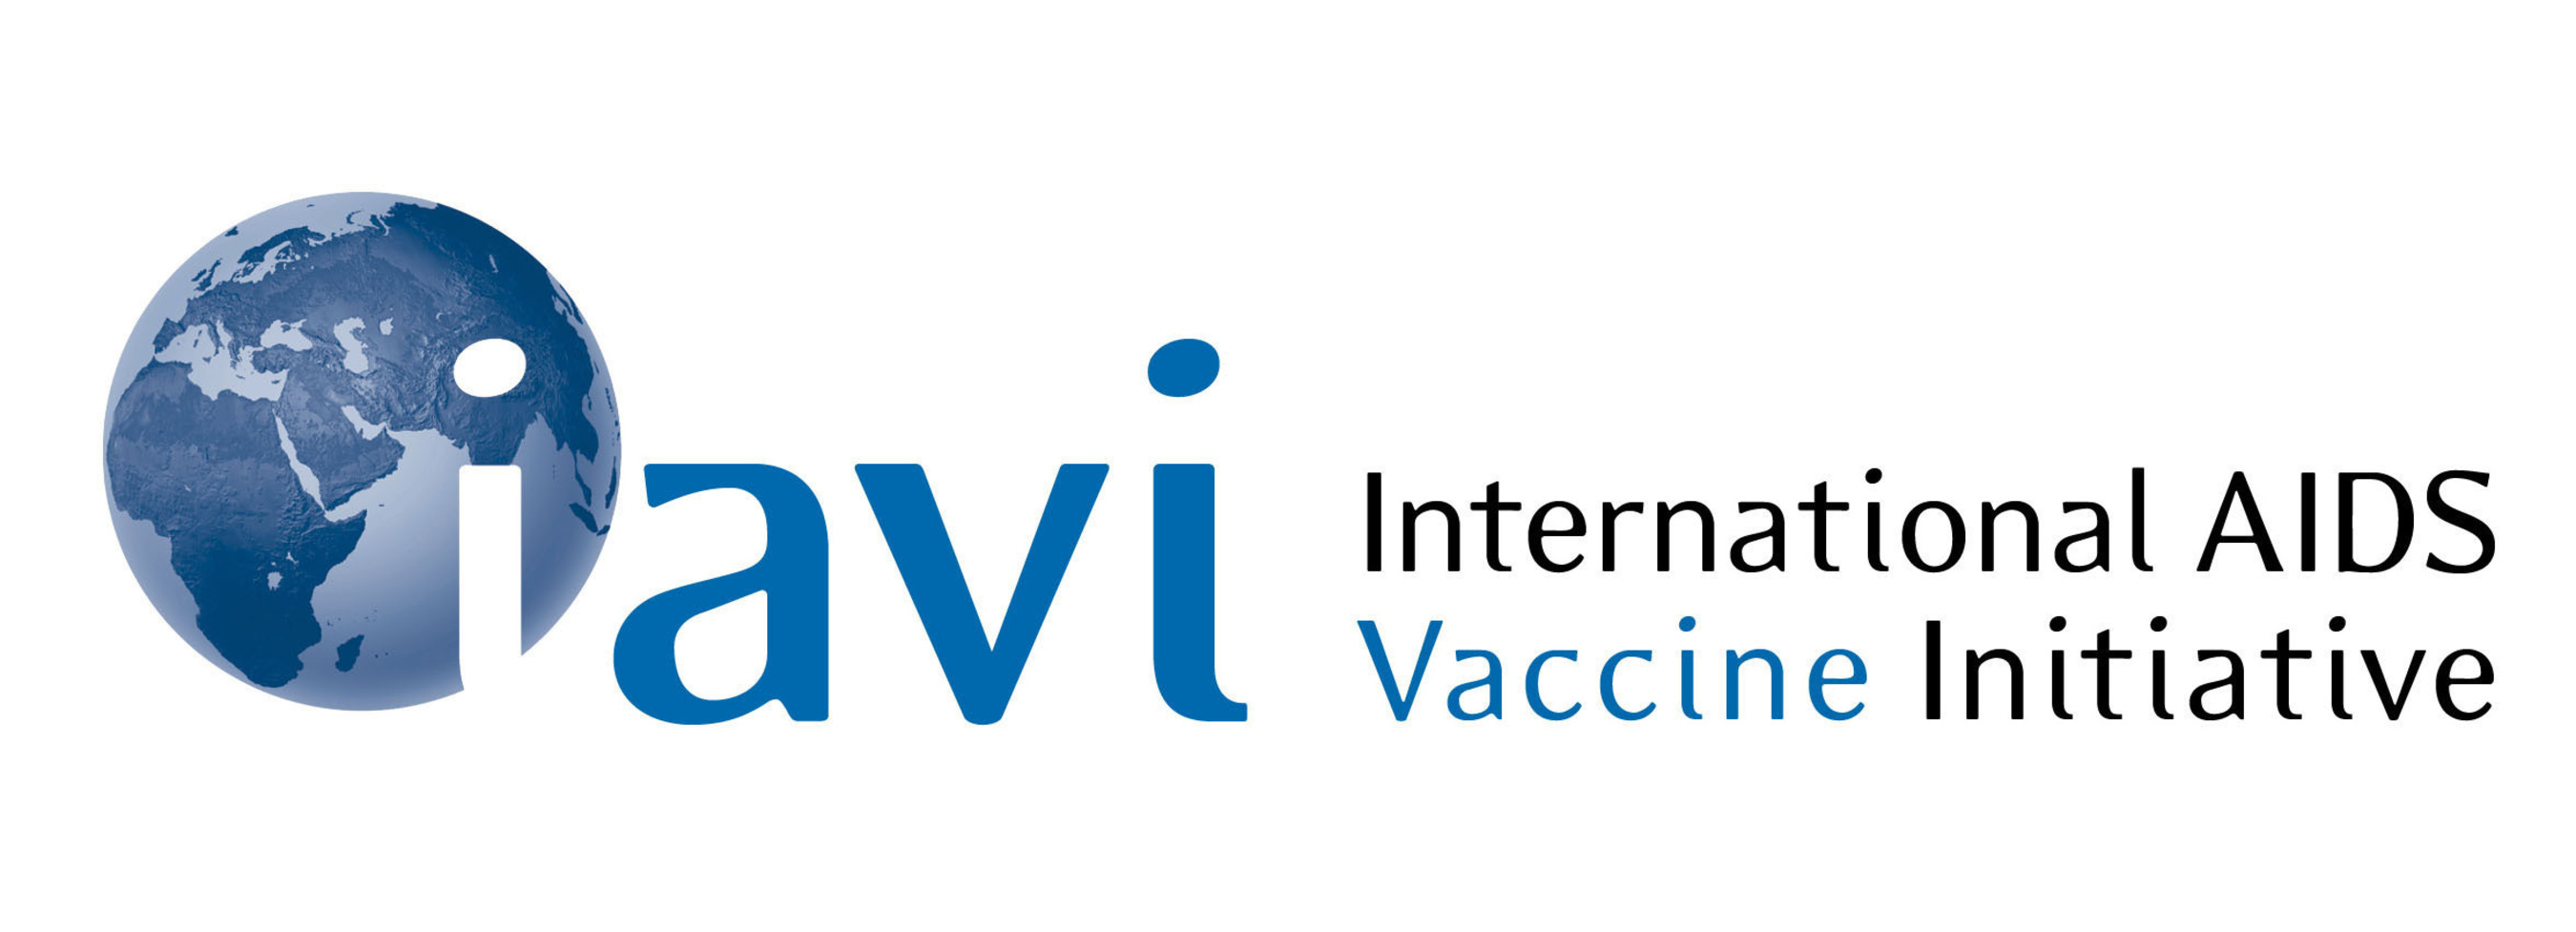 International AIDS Vaccine Initiative Logo.